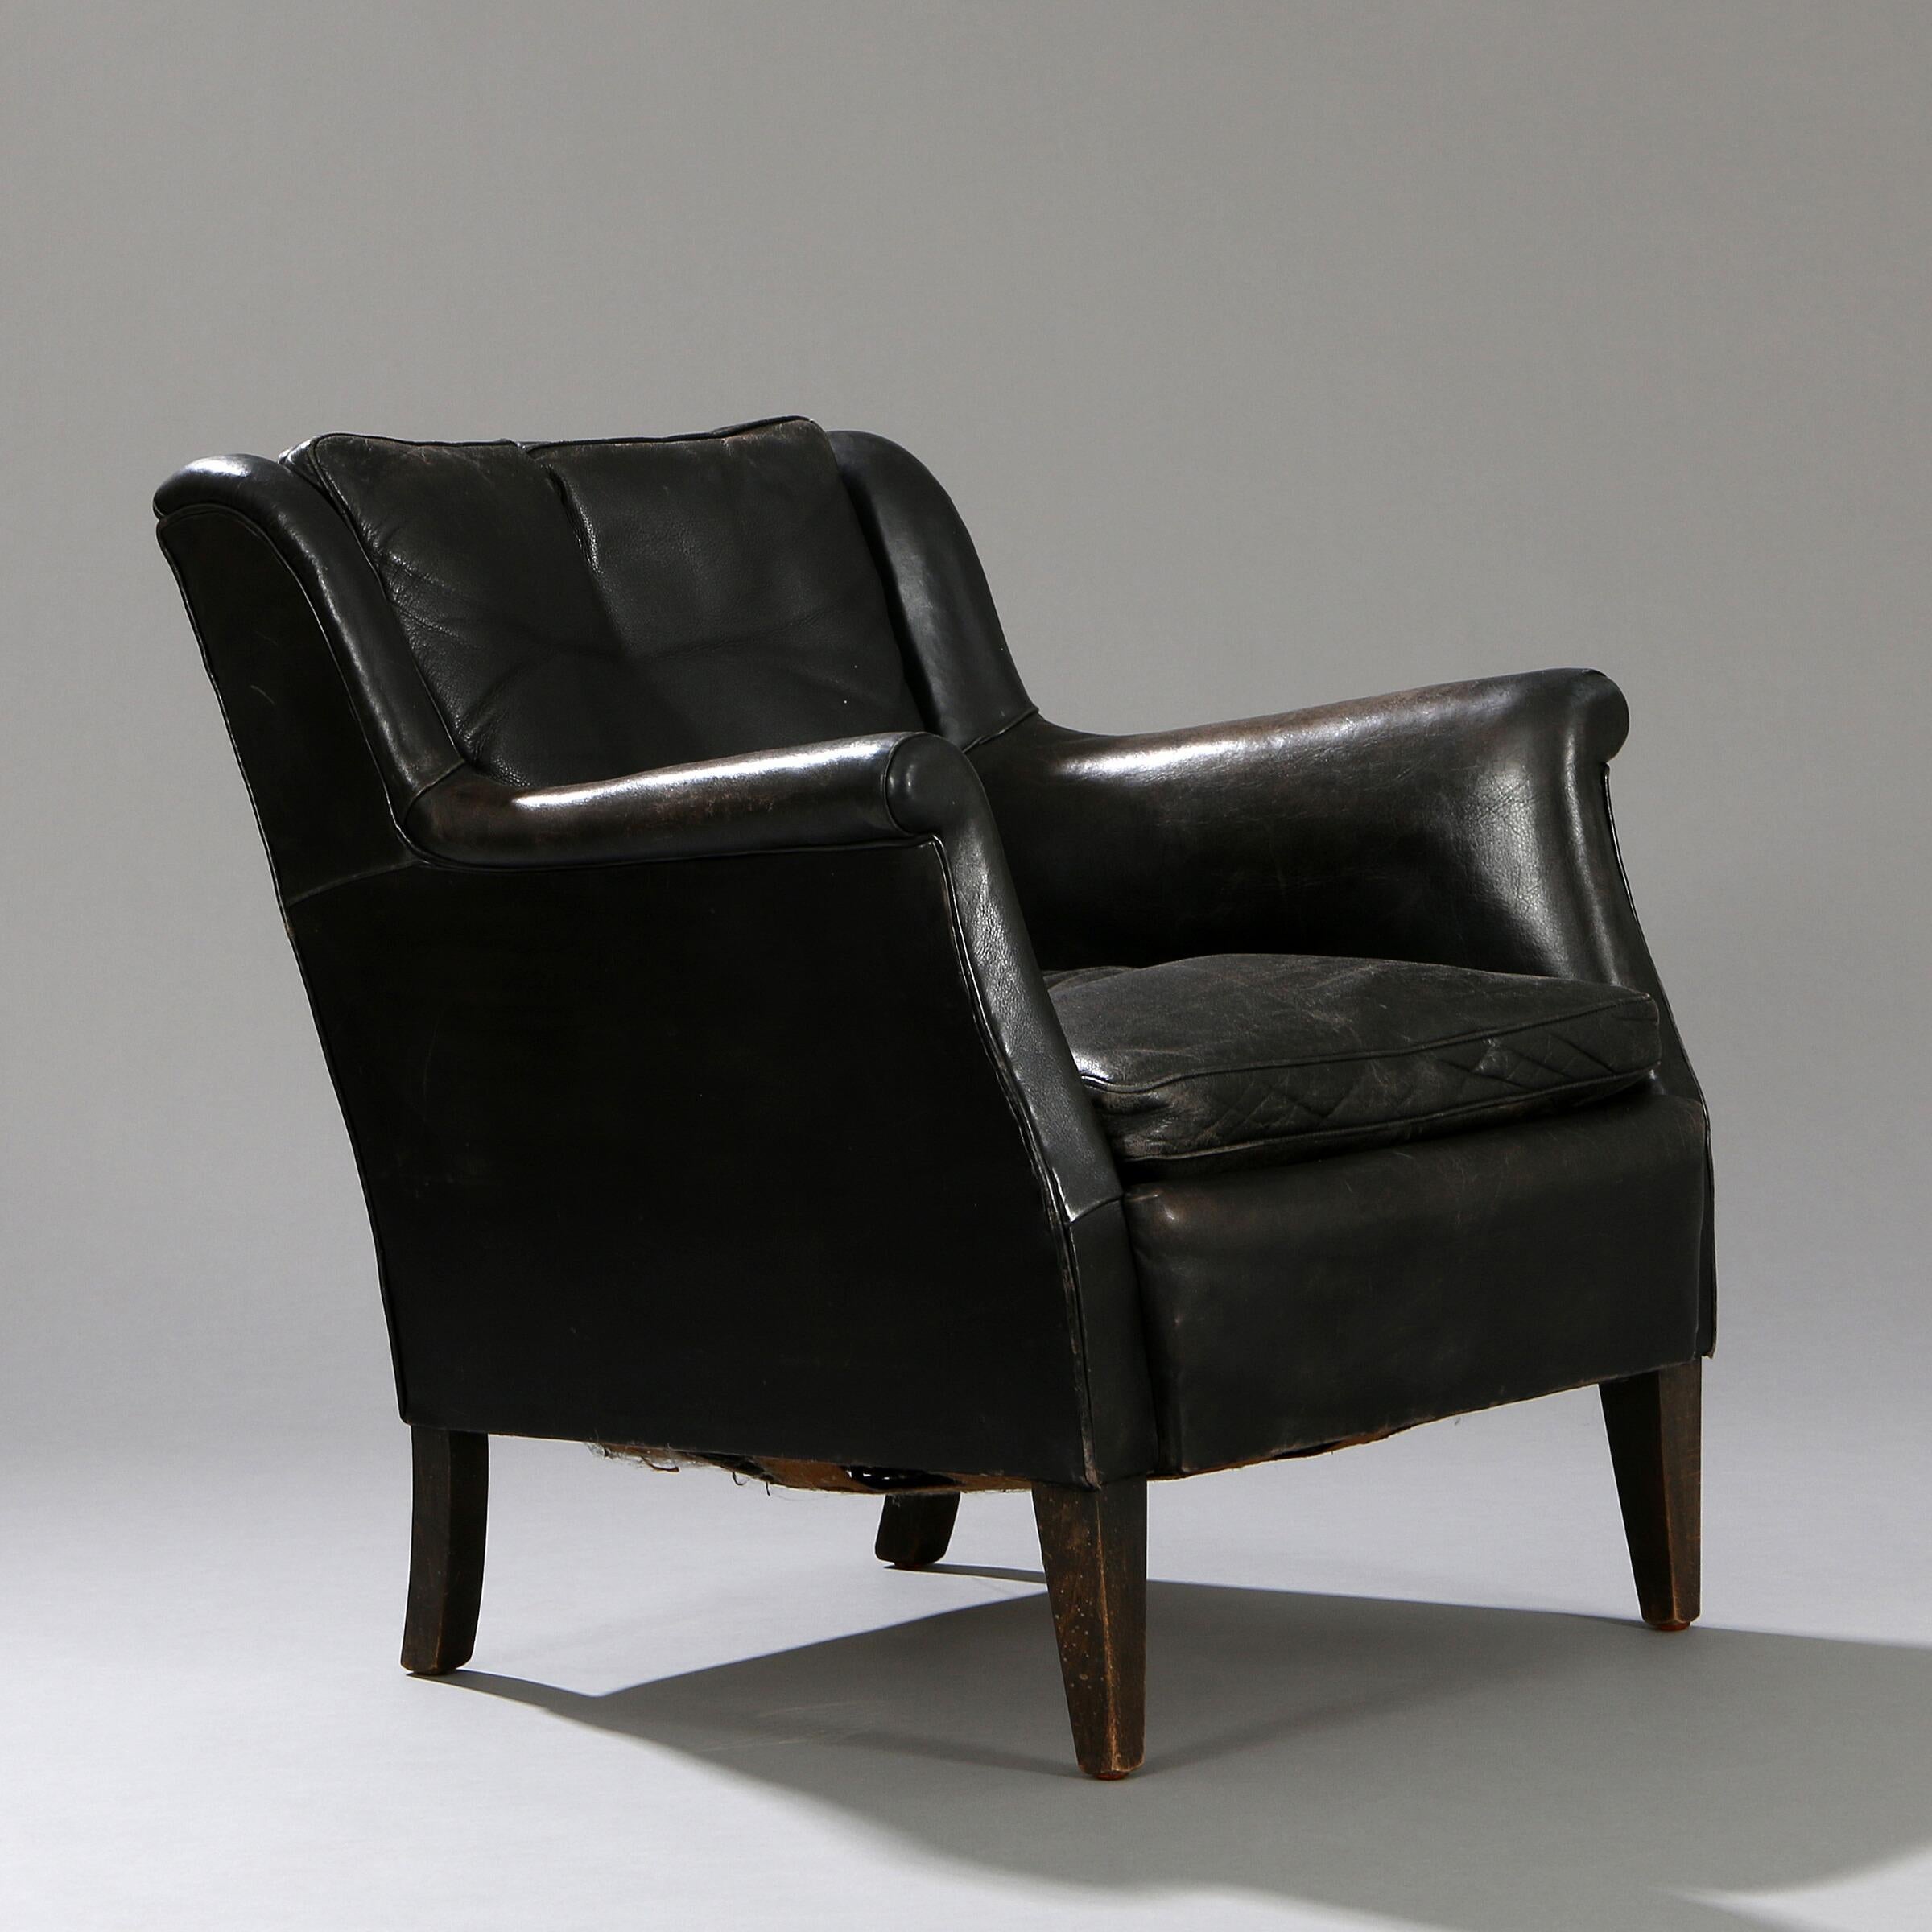 Ce canapé et ce fauteuil en cuir noir ont probablement été fabriqués par l'ébéniste Frits Henningsen, vers 1950. Le cuir noir d'origine est bien patiné et présente des signes d'usure et quelques craquelures. Le dossier s'incline considérablement, ce